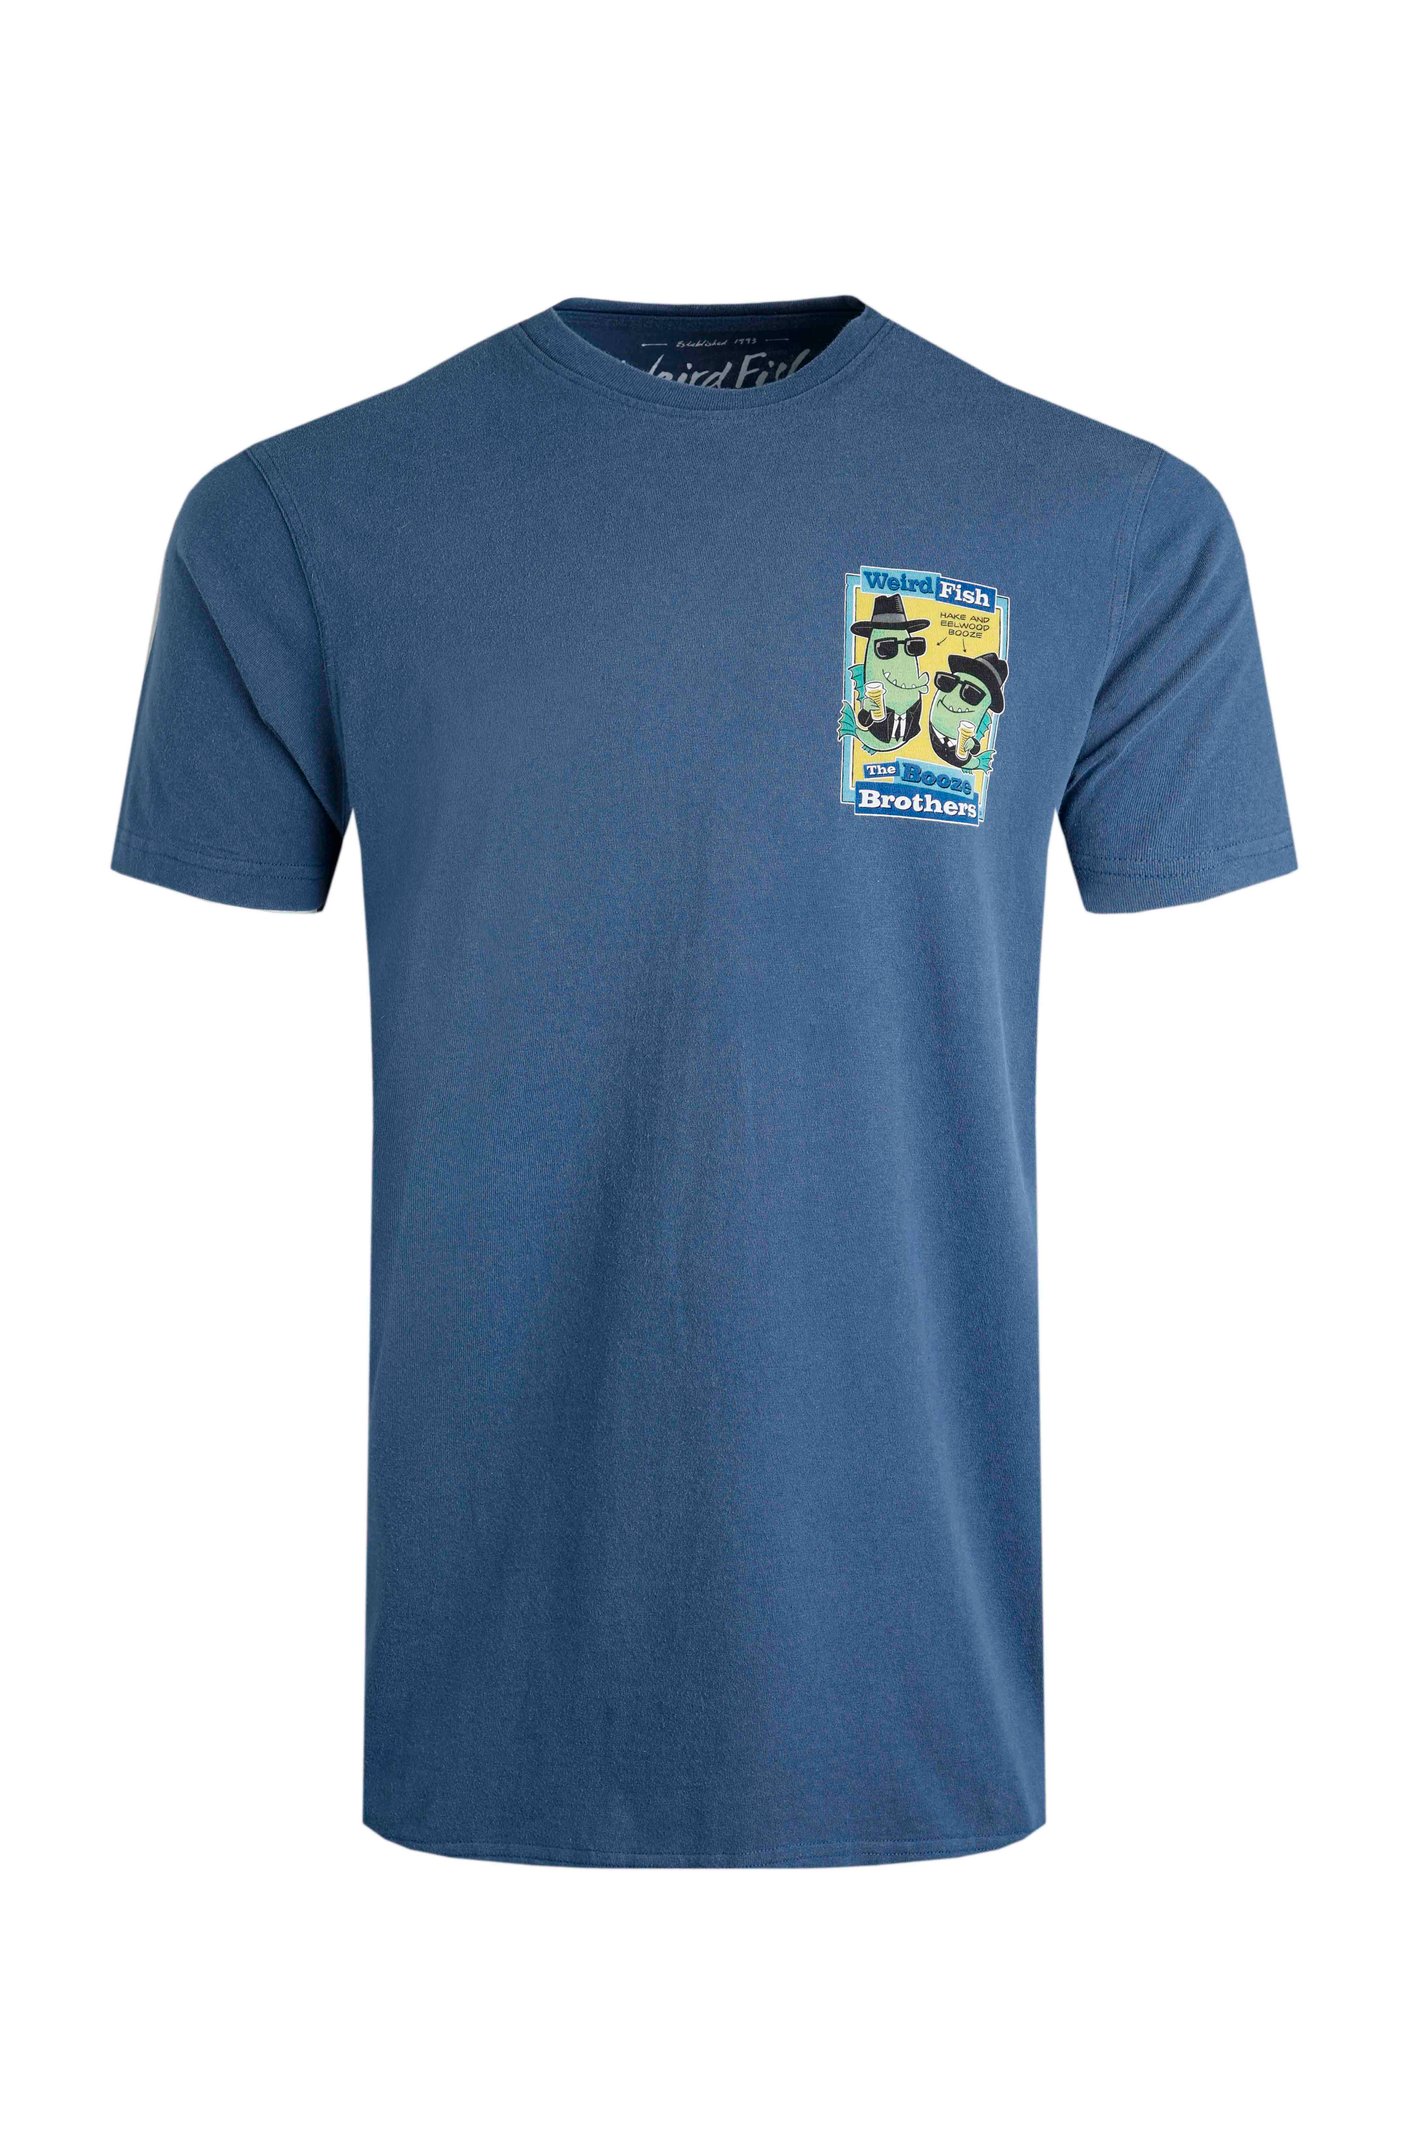 Weird Fish Booze Brothers Artist T-Shirt Ensign Blue Size 4XL